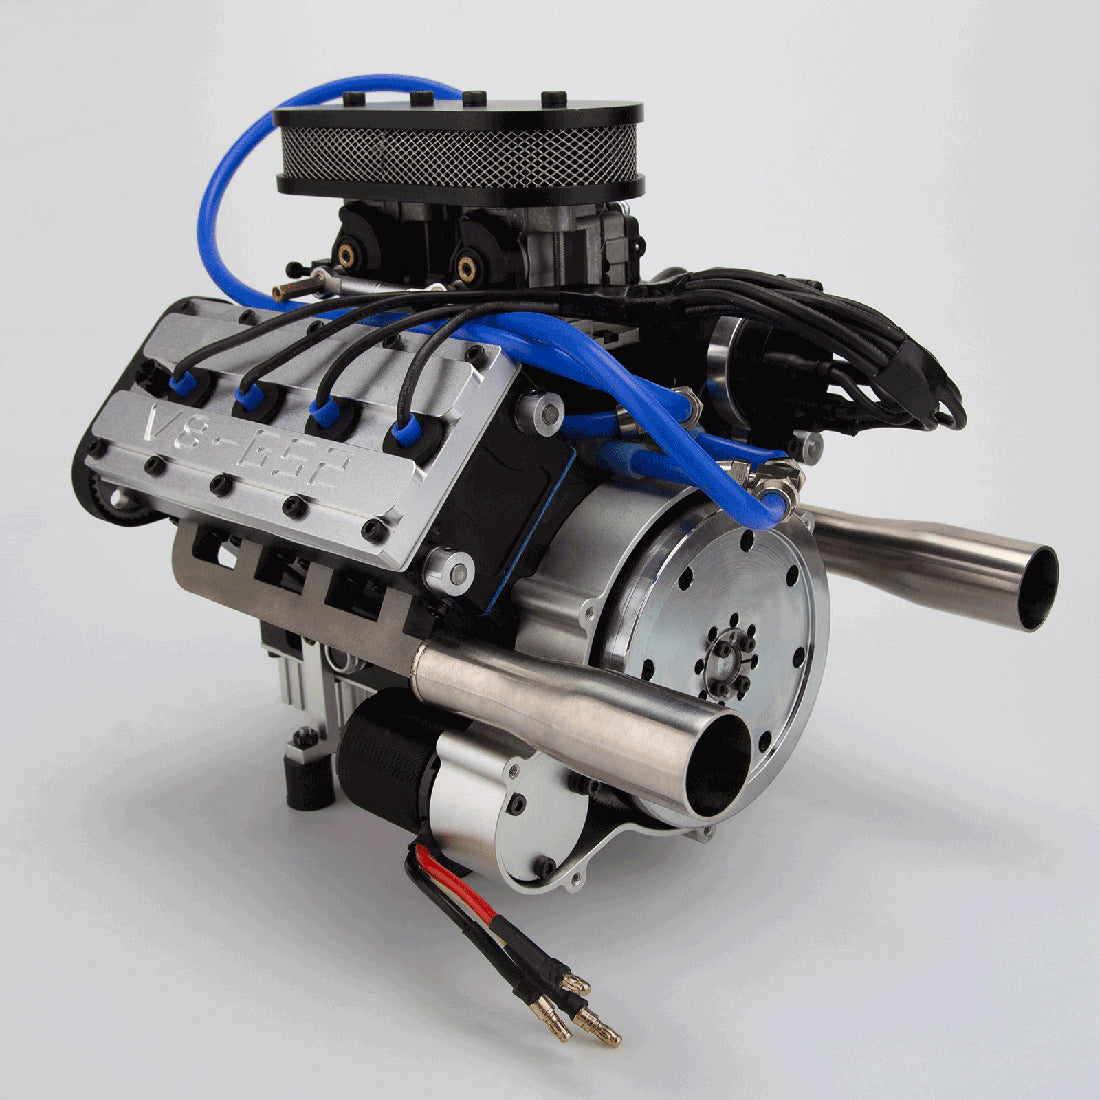 ENJOMOR V8 GS-V8 78CC DOHC Four-Stroke V-Shaped Eight-Cylinder Water-cooled Electric Gasoline Internal Combustion Engine Model - V8 Engine Model That Works